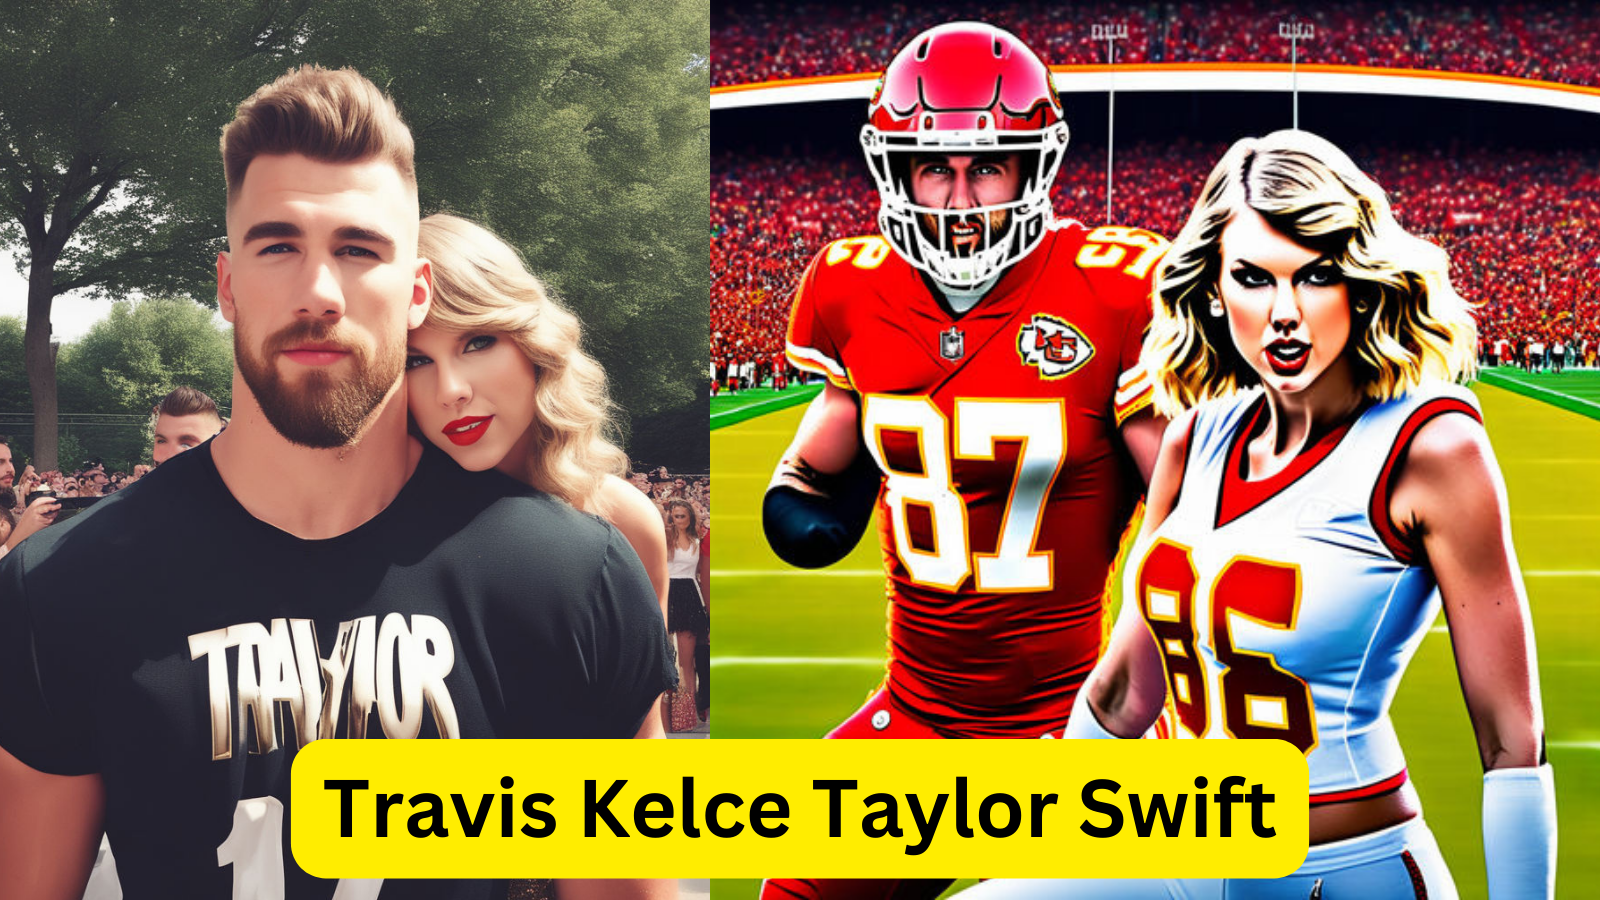 Travis Kelce Taylor Swift